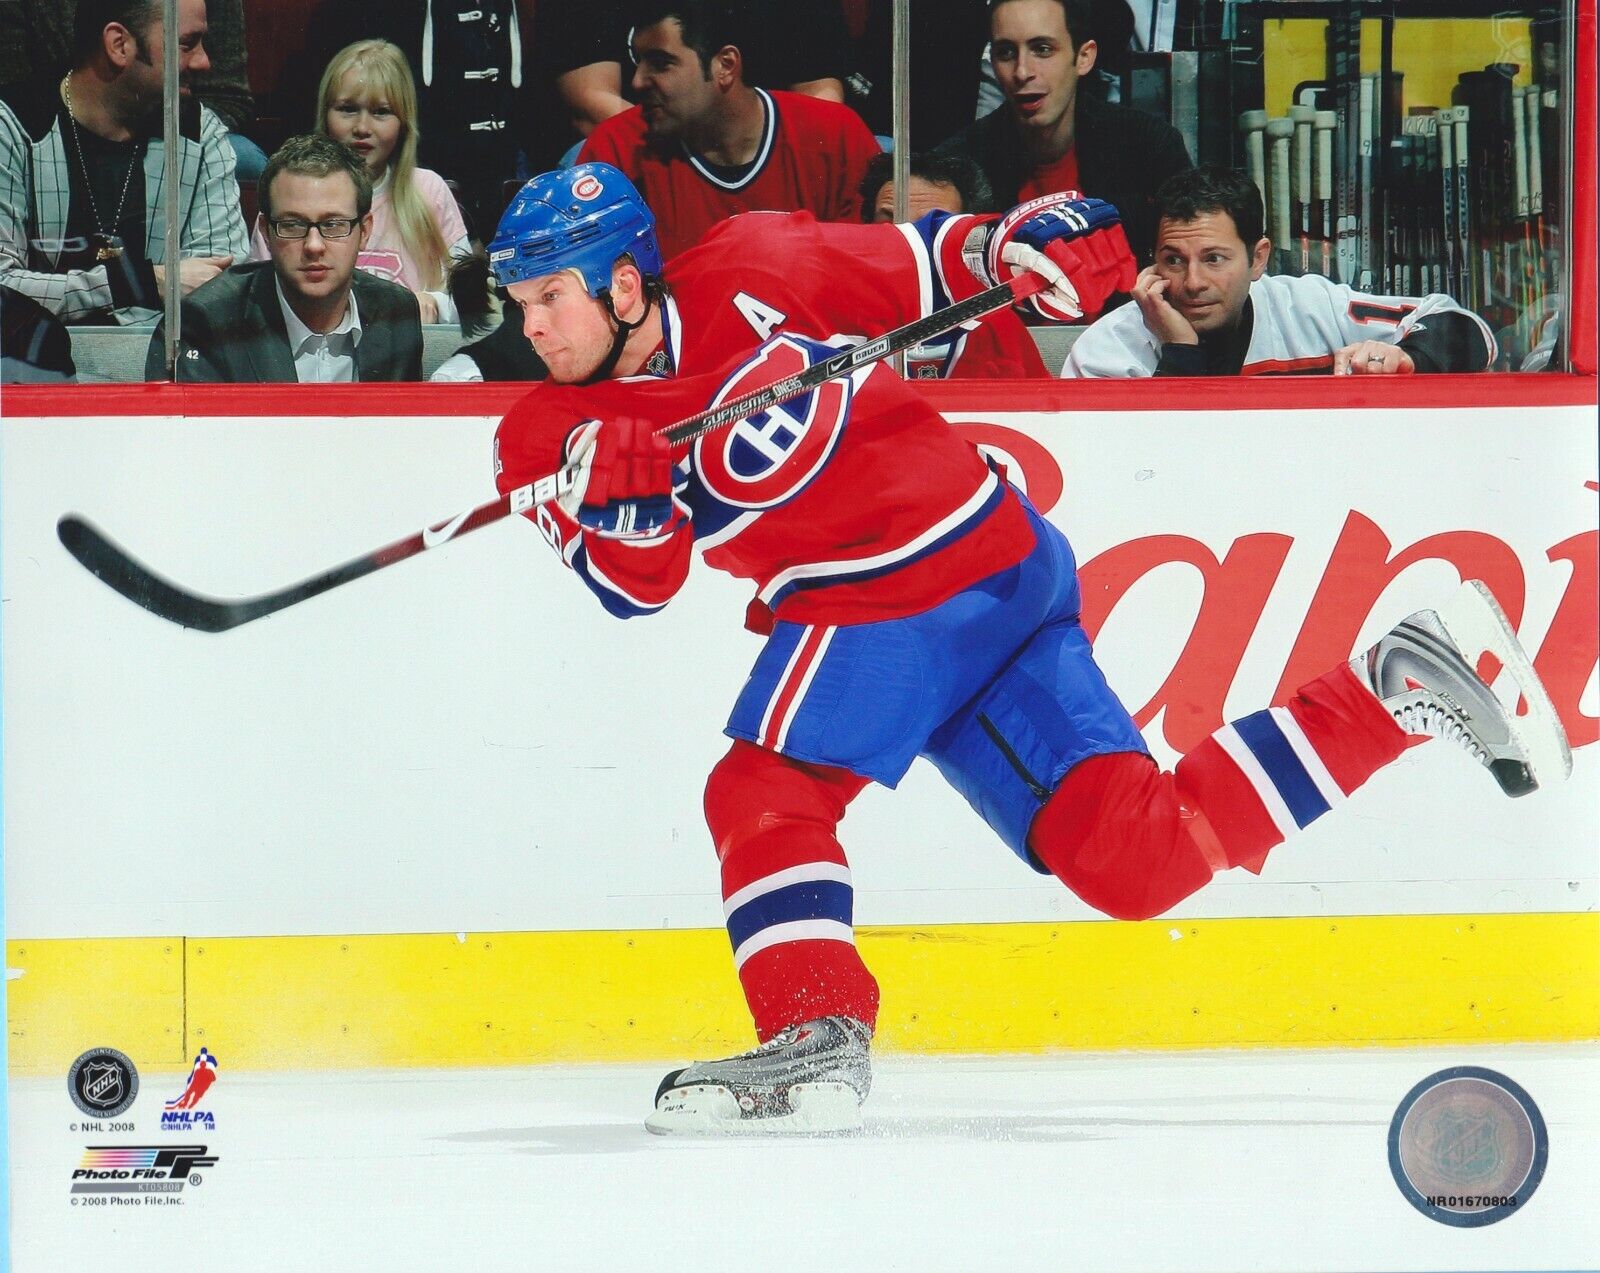 2008 Mike Komisarek Montreal Canadiens - Nhl Licensed 8x10 Photo #nr01670803